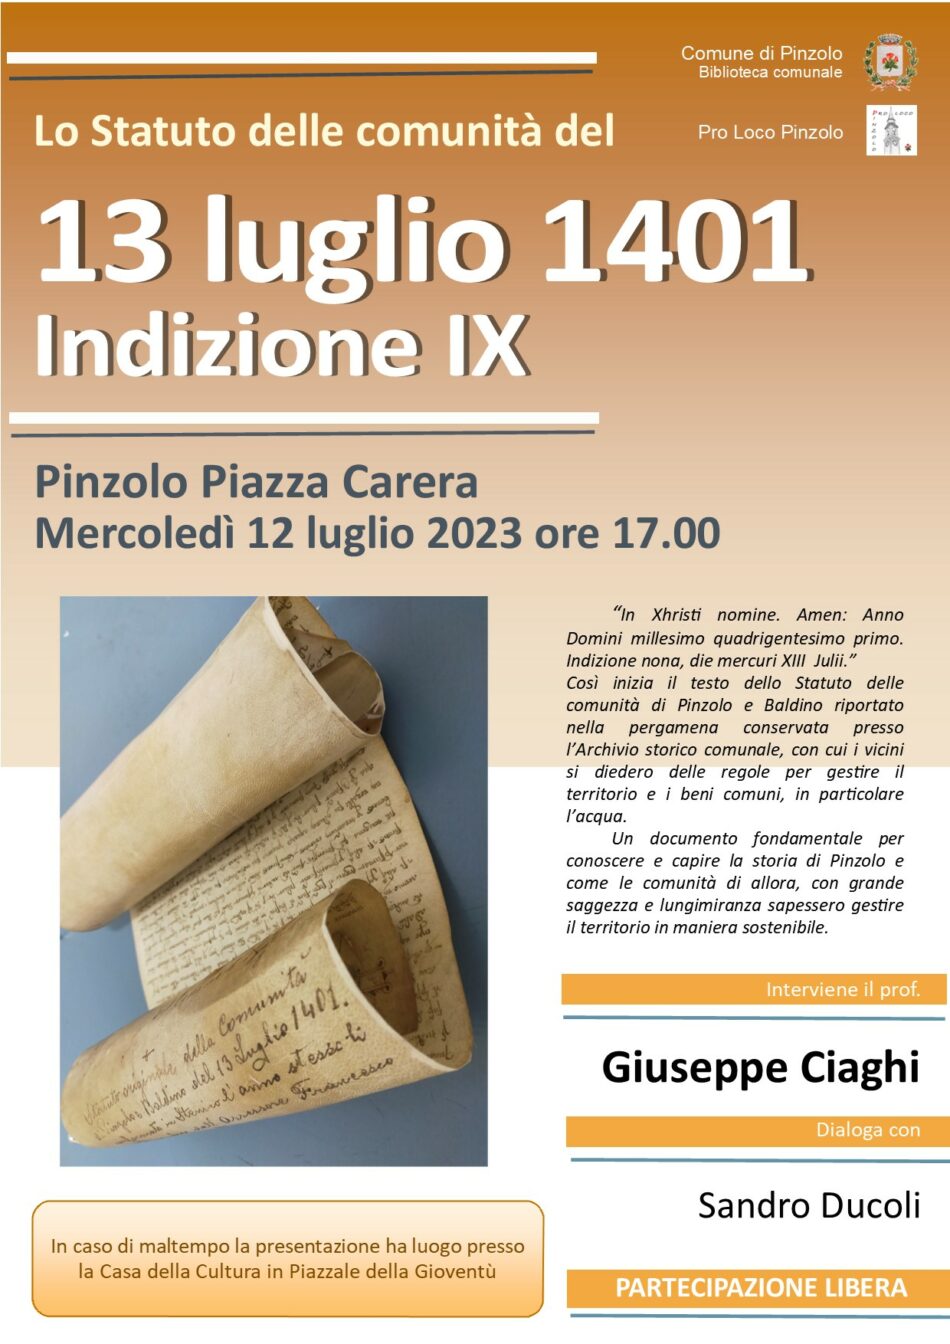 12 luglio ore 17.00 in piazza Carera: Lo Statuto delle comunità del 13 luglio 1401 Indizione IX